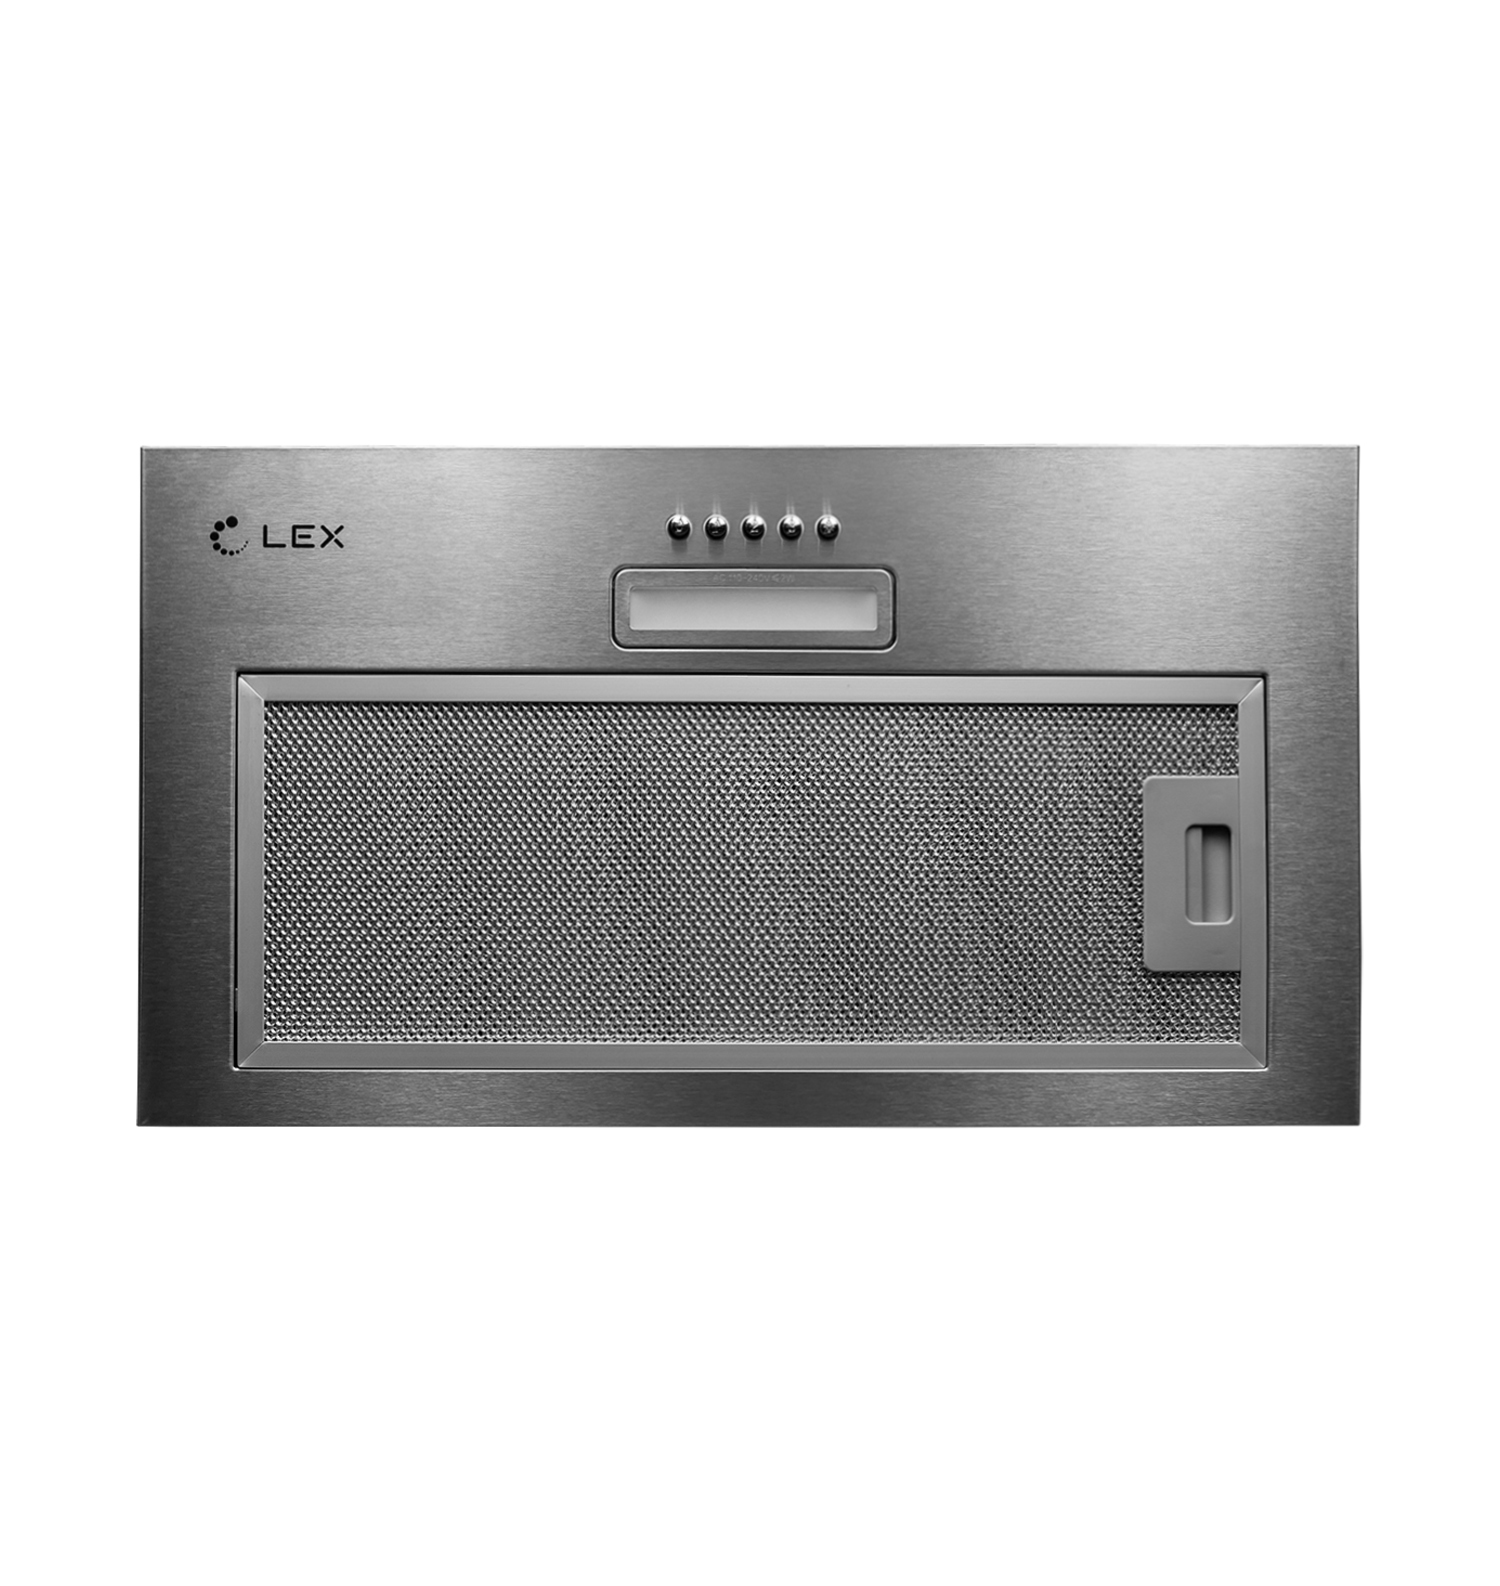 Кухонная вытяжка встраиваемая Lex GS Bloc Light 60 см серая (CHTI000328) кухонная вытяжка встраиваемая lex gs bloc gs 60 см белая chti000362